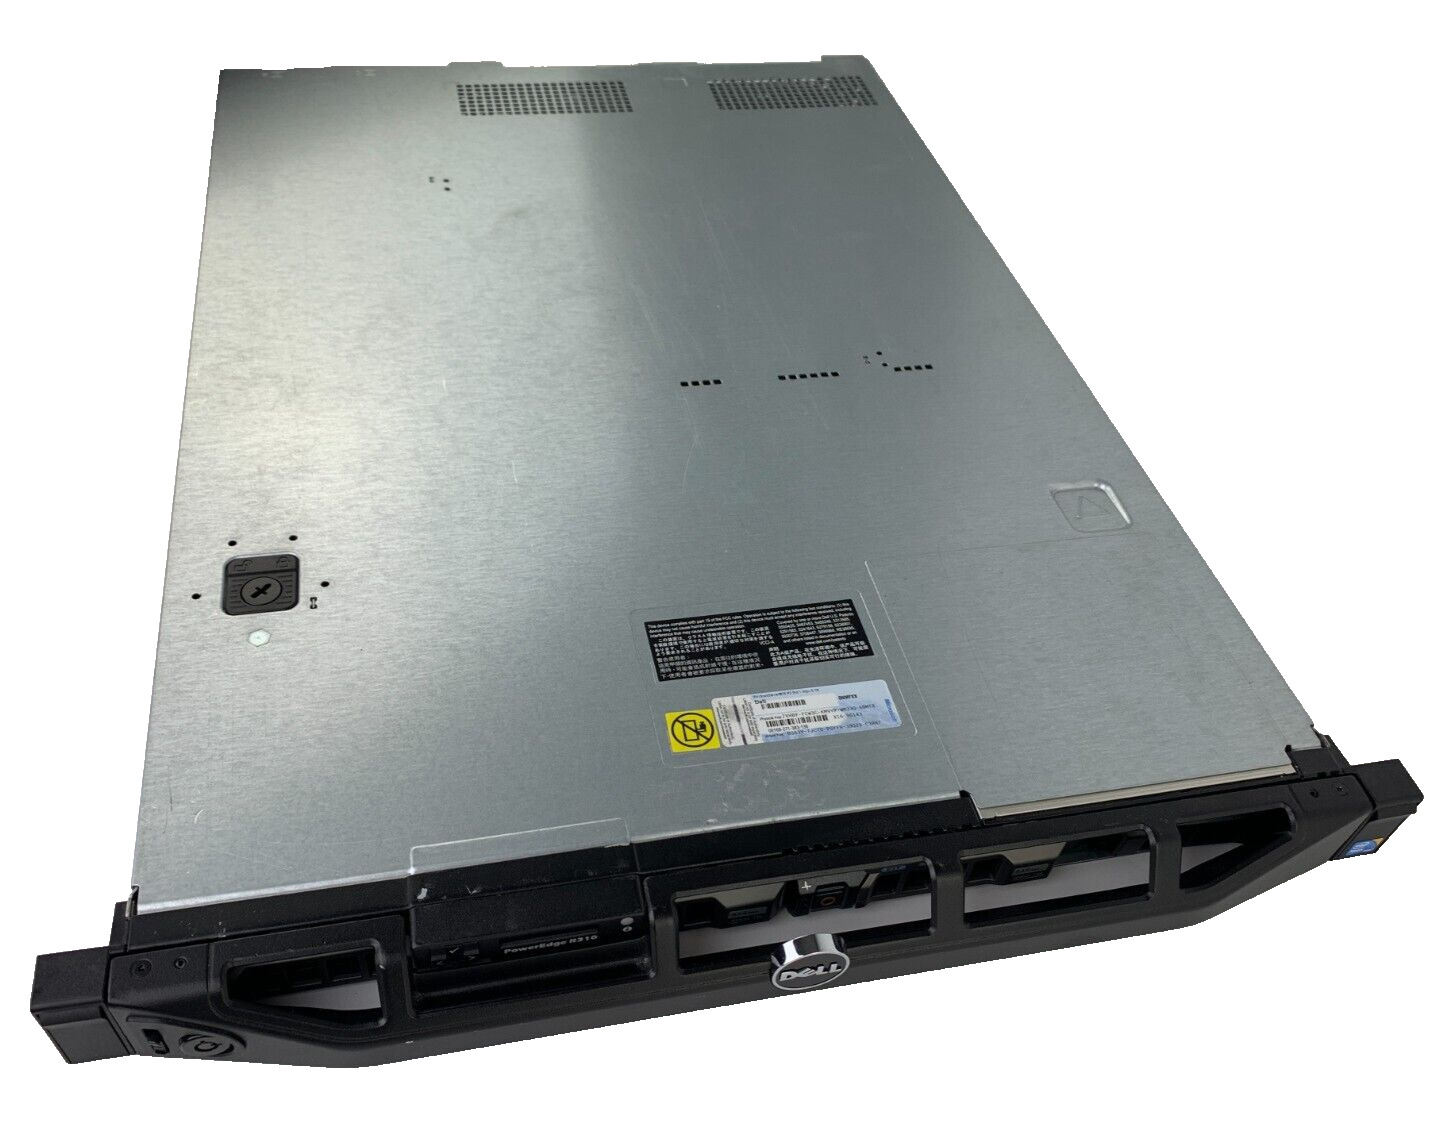 Dell PowerEdge R310 1U | Xeon X3430 2.4 GHz | 16GB DDR3 | NO HDD or OS